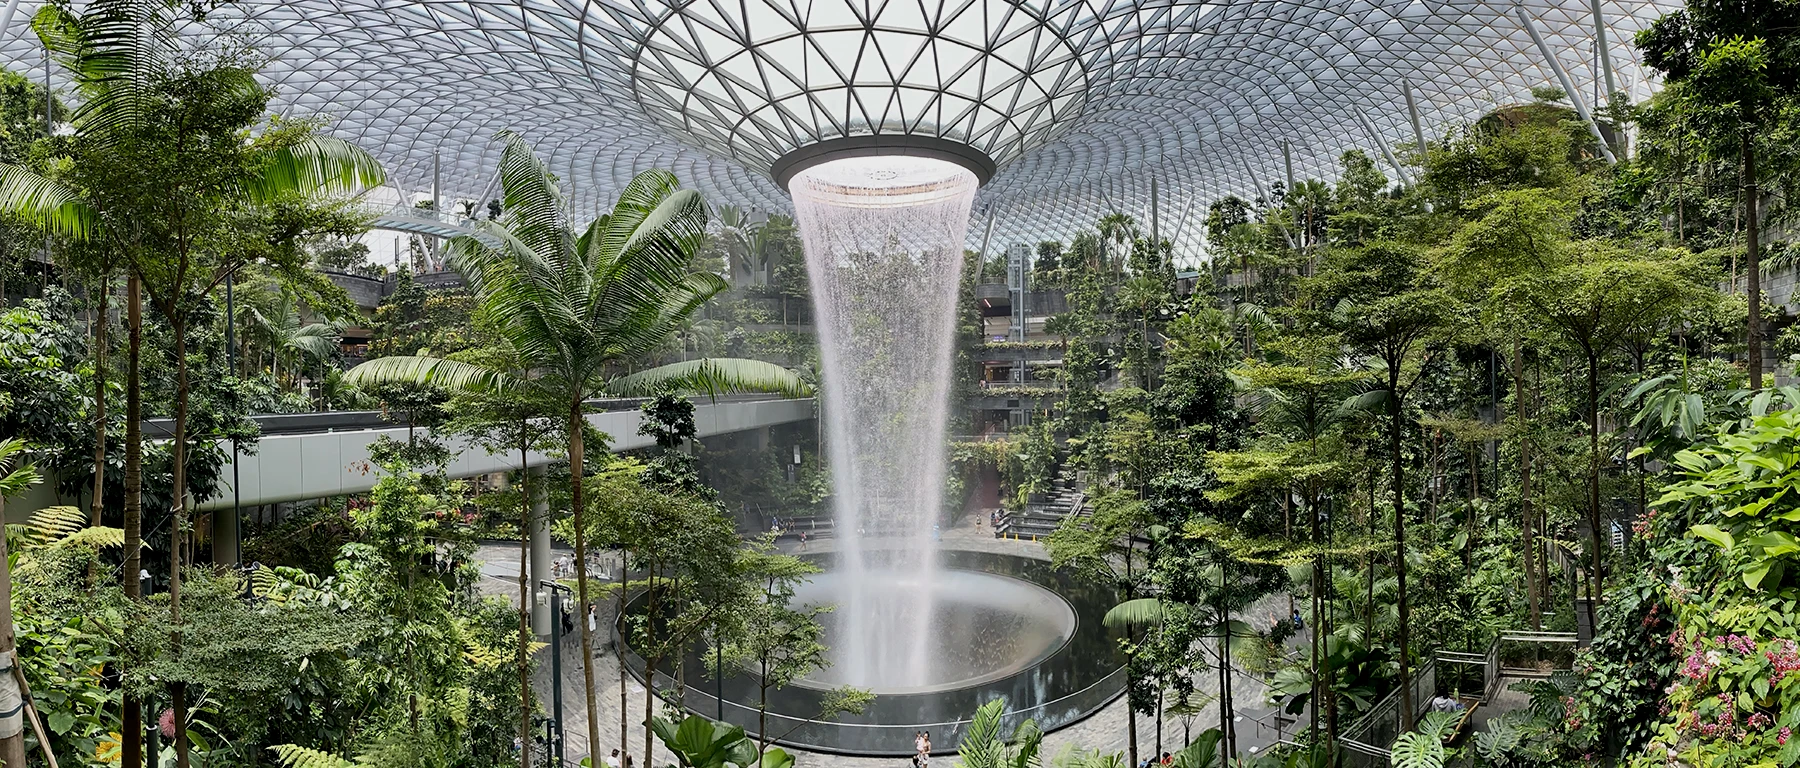 刚才有提到云雾林是世界第二大的室内瀑布。世界第一大的世界瀑布也在新加坡，位于新加坡樟宜机场的汇丰银行雨漩涡(HSBC Rain Vortex)。